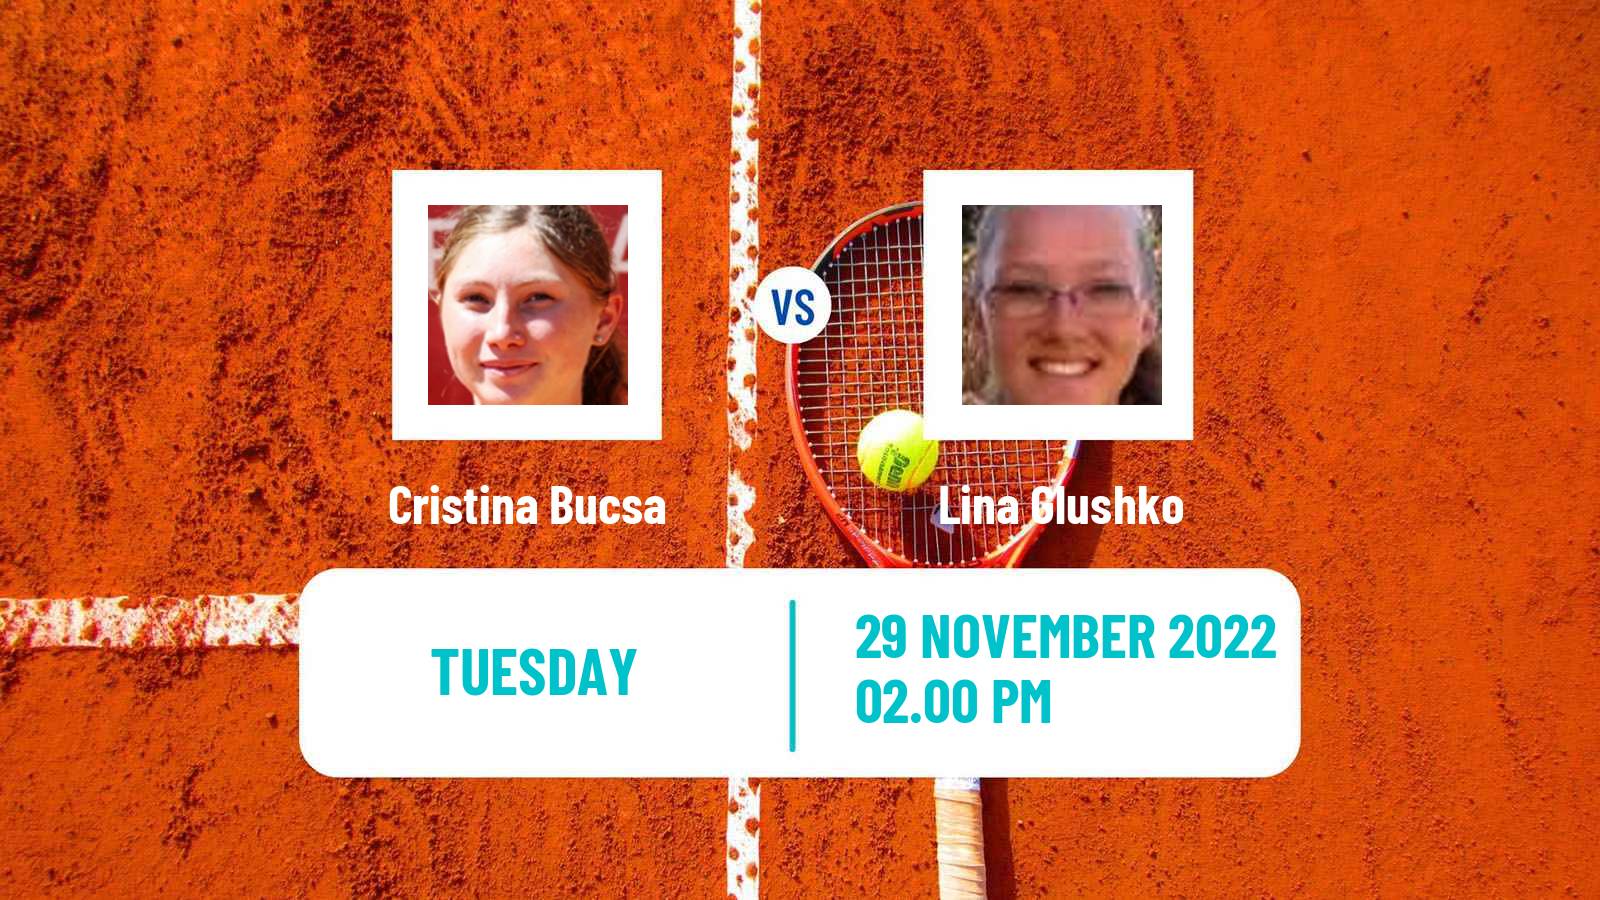 Tennis ATP Challenger Cristina Bucsa - Lina Glushko